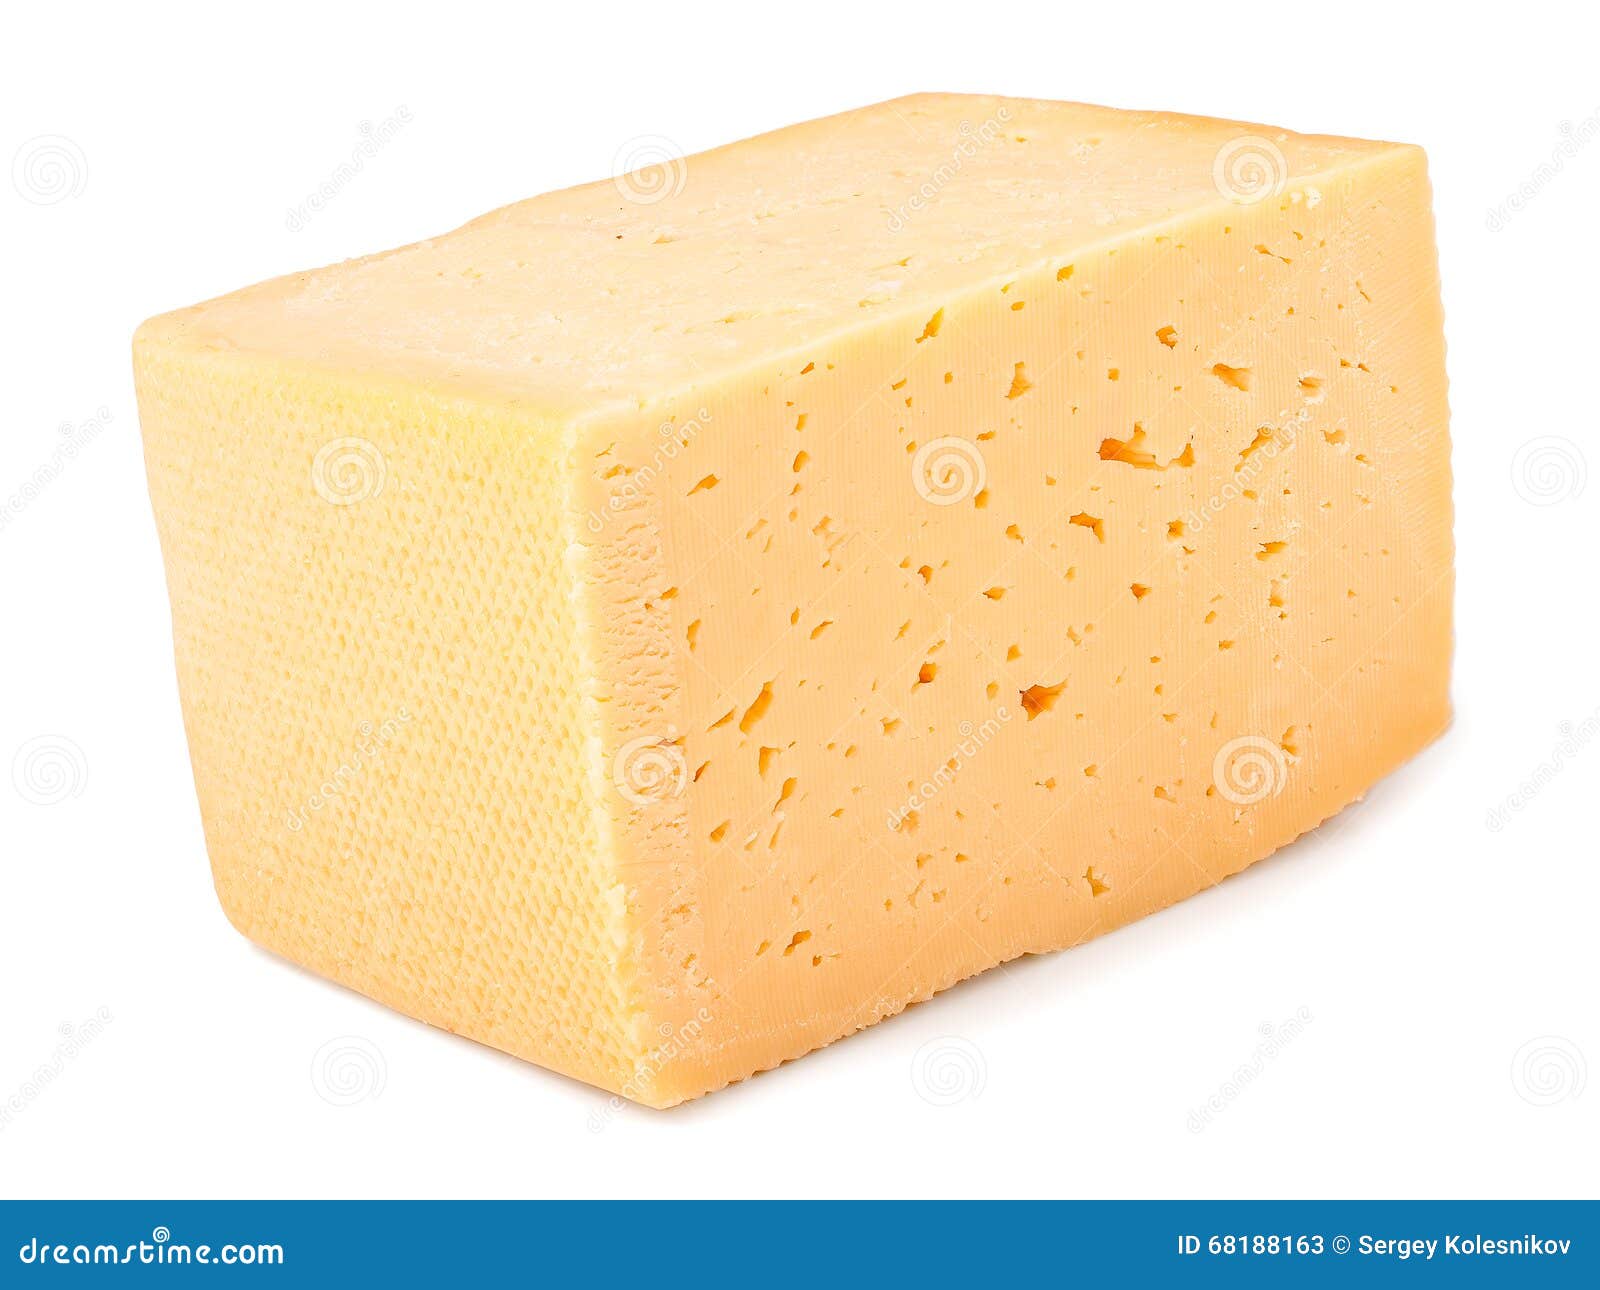 Сон приснился сыр. Сыр прямоугольный. Ломтик сыра на белом фоне. Сыр квадратный. Кусочек сыра на белом фоне.